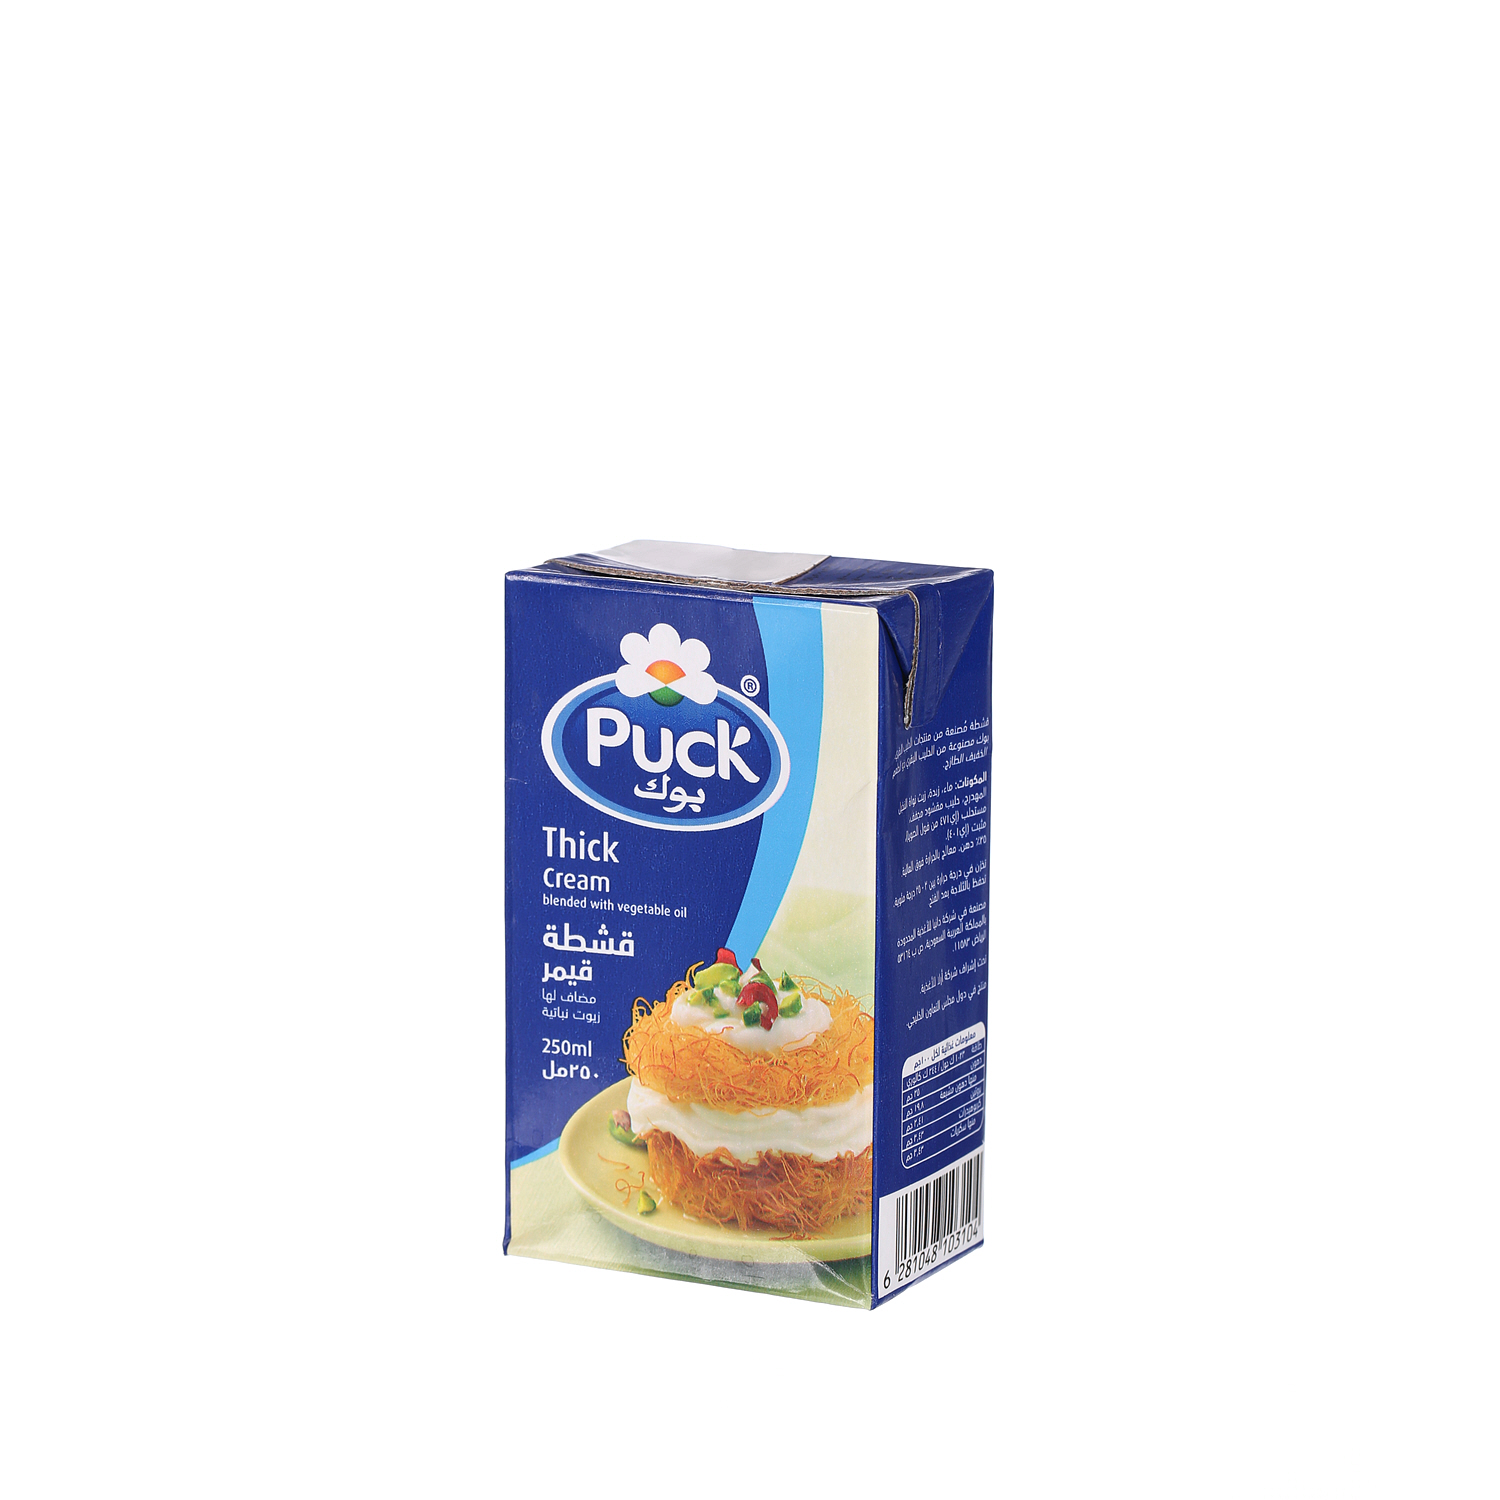 Puck Thick Cream 250ml